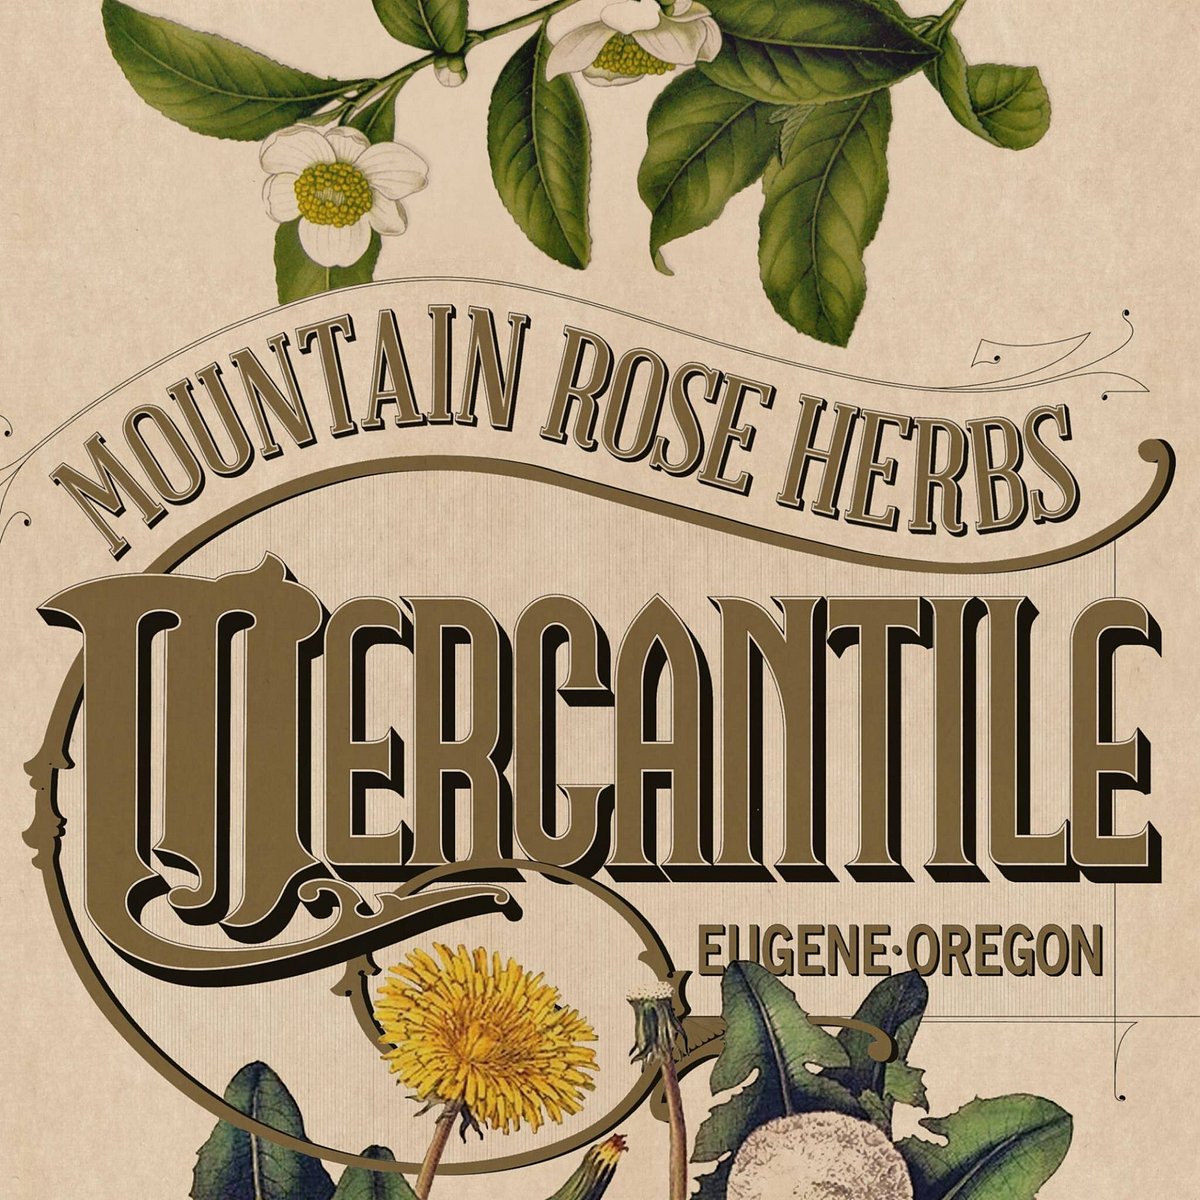 Mountain Rose Herbs Mercantile (Eugene, OR): Hours, Address - Tripadvisor